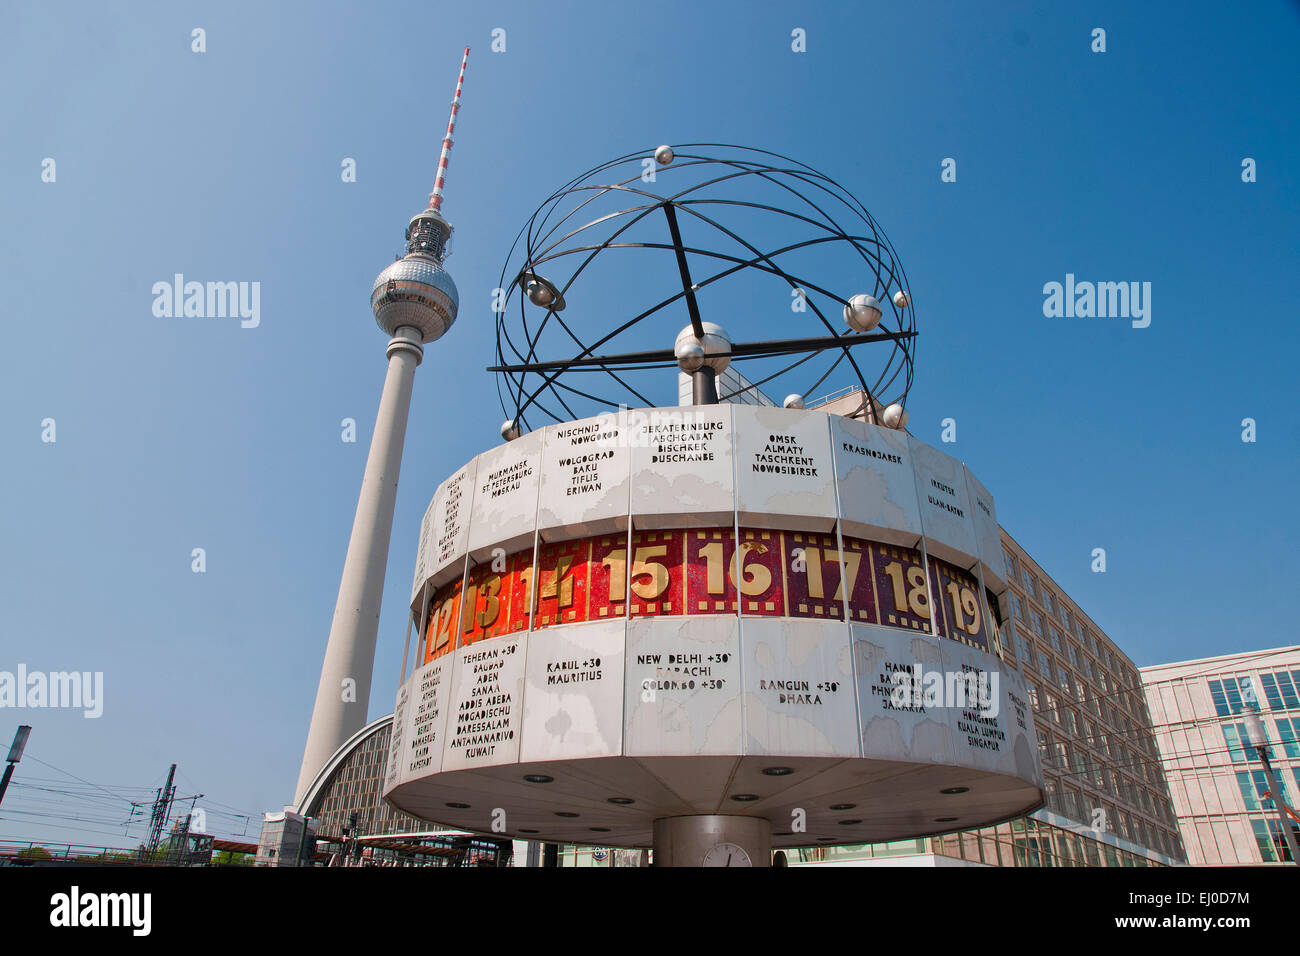 Deutschland, Berlin, Denkmal, Urania, Weltzeituhr, Uhr, Weltzeit, Urania, Alexanderplatz, Wohnblock, Hochhaus Buildi Stockfoto